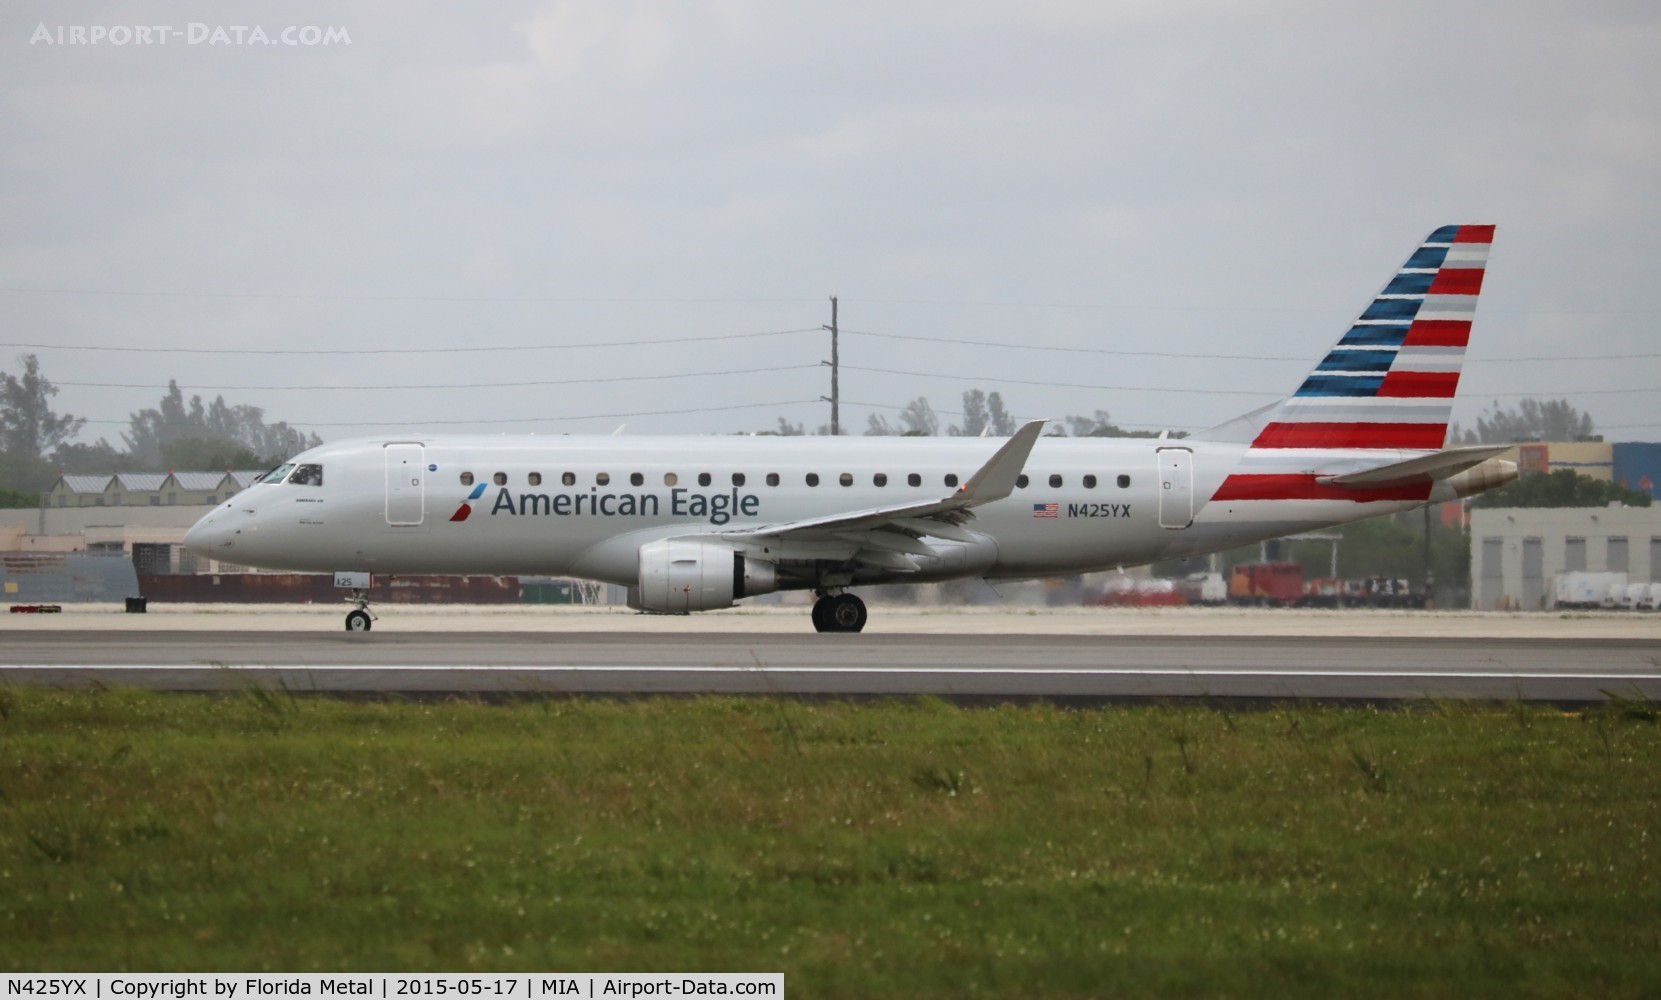 N425YX, 2014 Embraer 175LR (ERJ-170-200LR) C/N 17000396, American Eagle